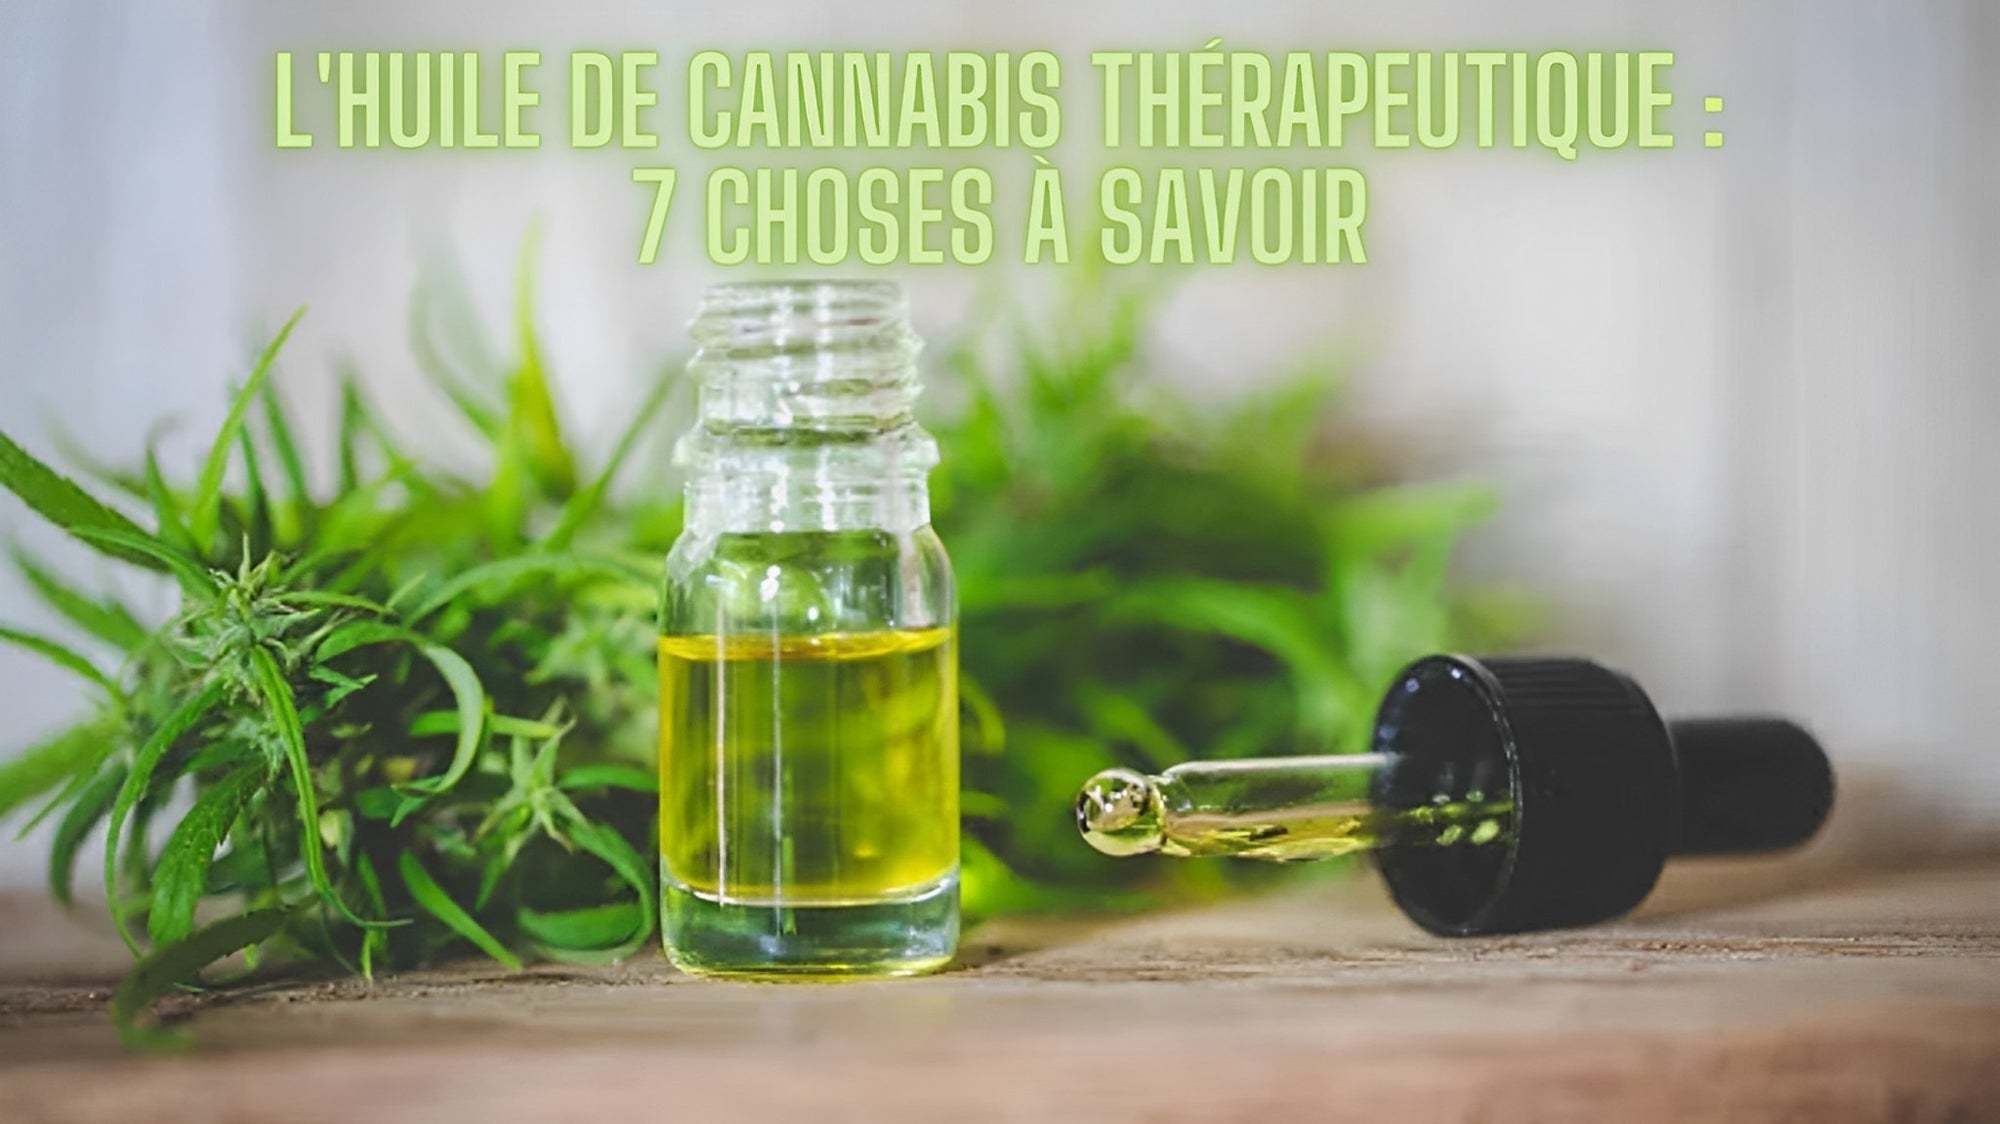 L'Huile De Cannabis Thérapeutique : 7 Choses à Savoir